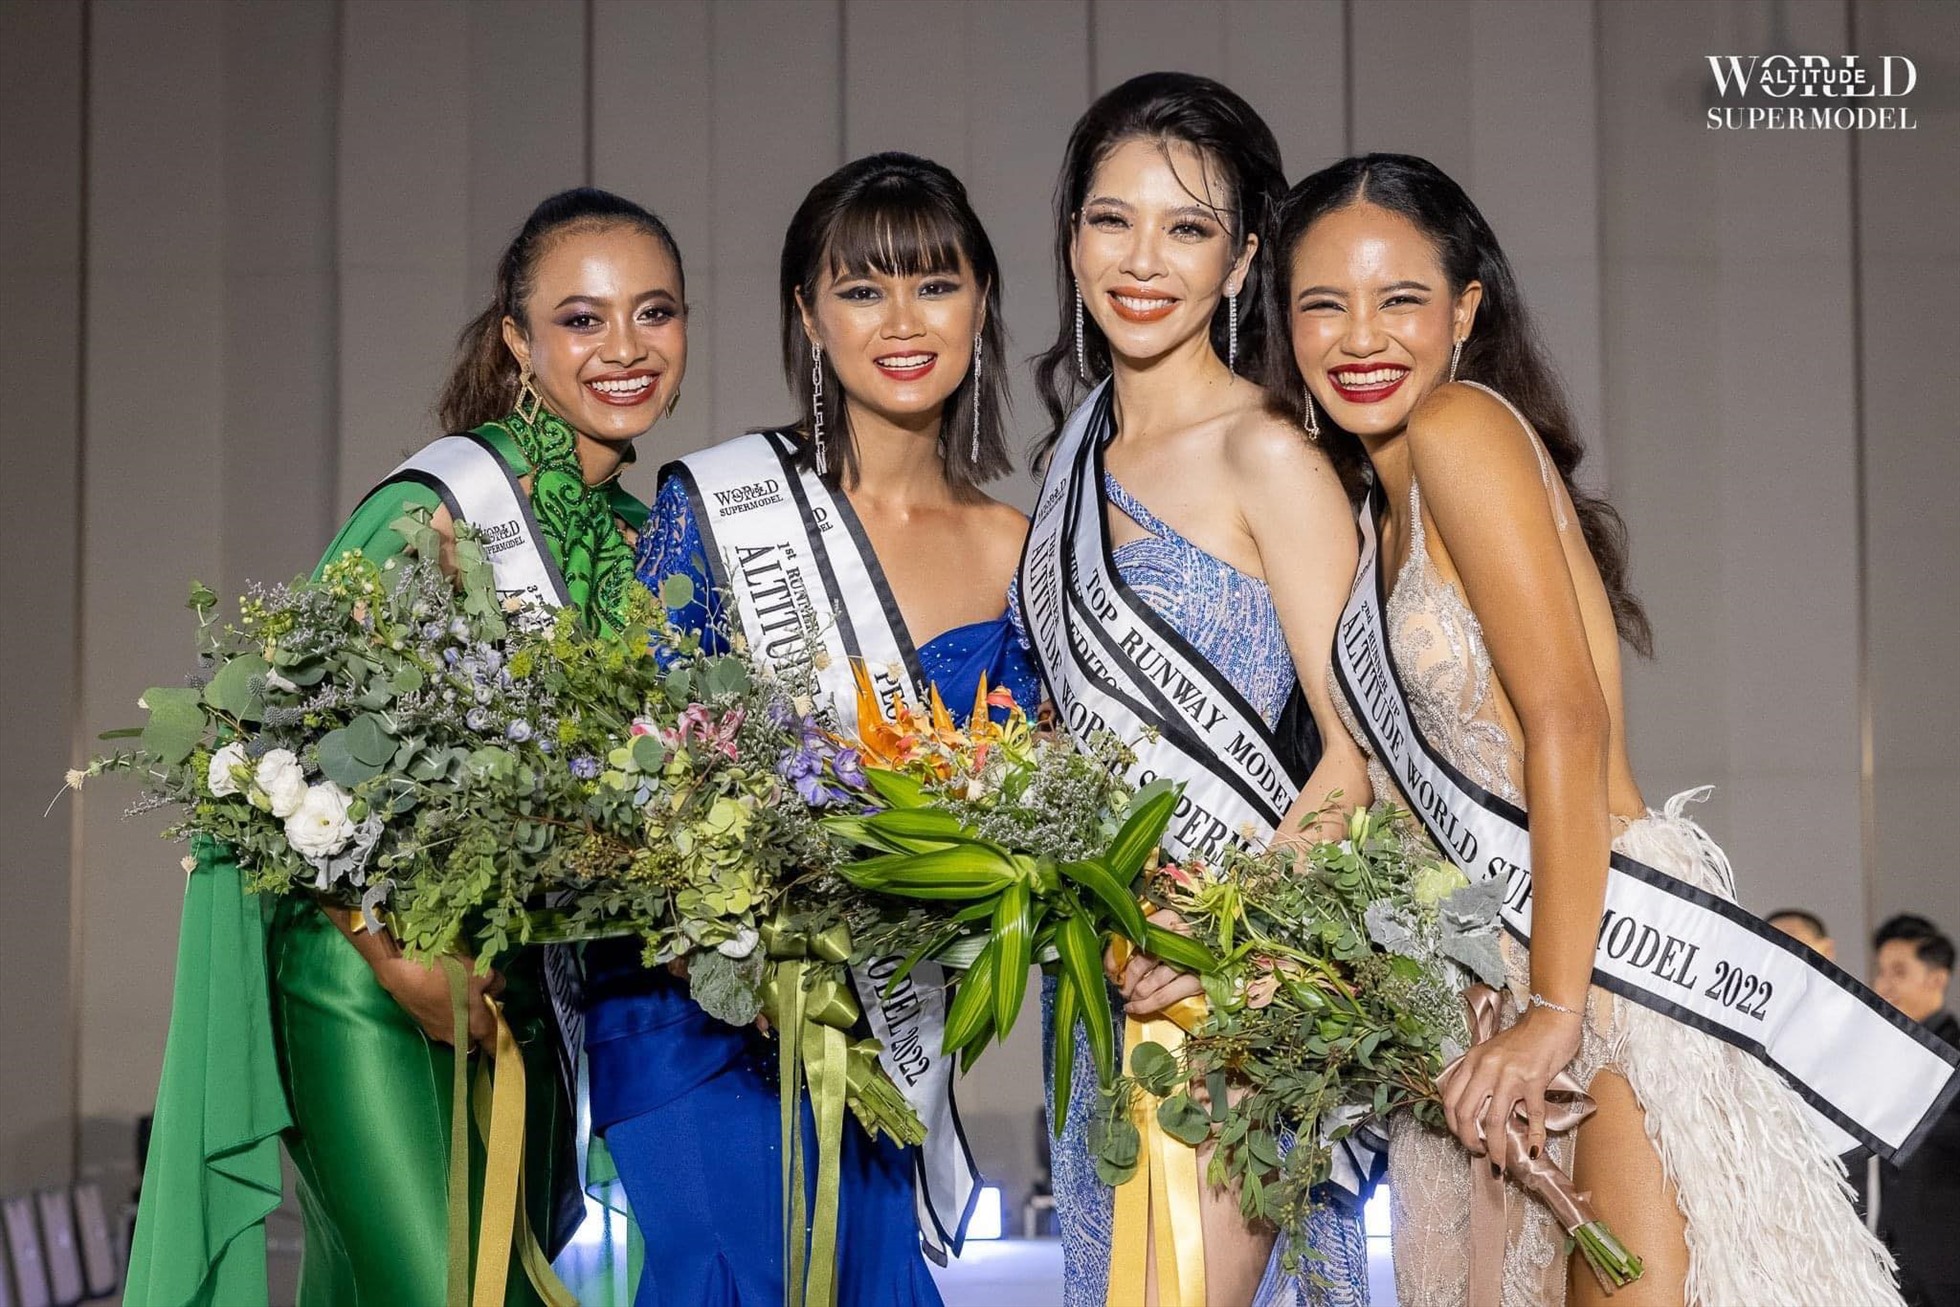 Trước đó vào tháng 6.2022, Thùy Dung từng đăng quang World Supermodel 2022 – Siêu mẫu Thế giới được tổ chức tại Thái Lan với hơn 15 quốc gia tham dự.  Miss & Mister Asian International là cuộc thi nhan sắc danh giá nhằm tôn vinh nét đẹp hình thể và lan tỏa giá trị nhân văn được tổ chức vào năm 2013. Với quy mô châu Á, cuộc quy tụ những thí sinh tài năng đến từ nhiều quốc gia. Sau 2 năm ảnh hưởng nghiêm trọng bởi đại dịch COVID-19, năm nay cuộc thi chính thức trở lại.